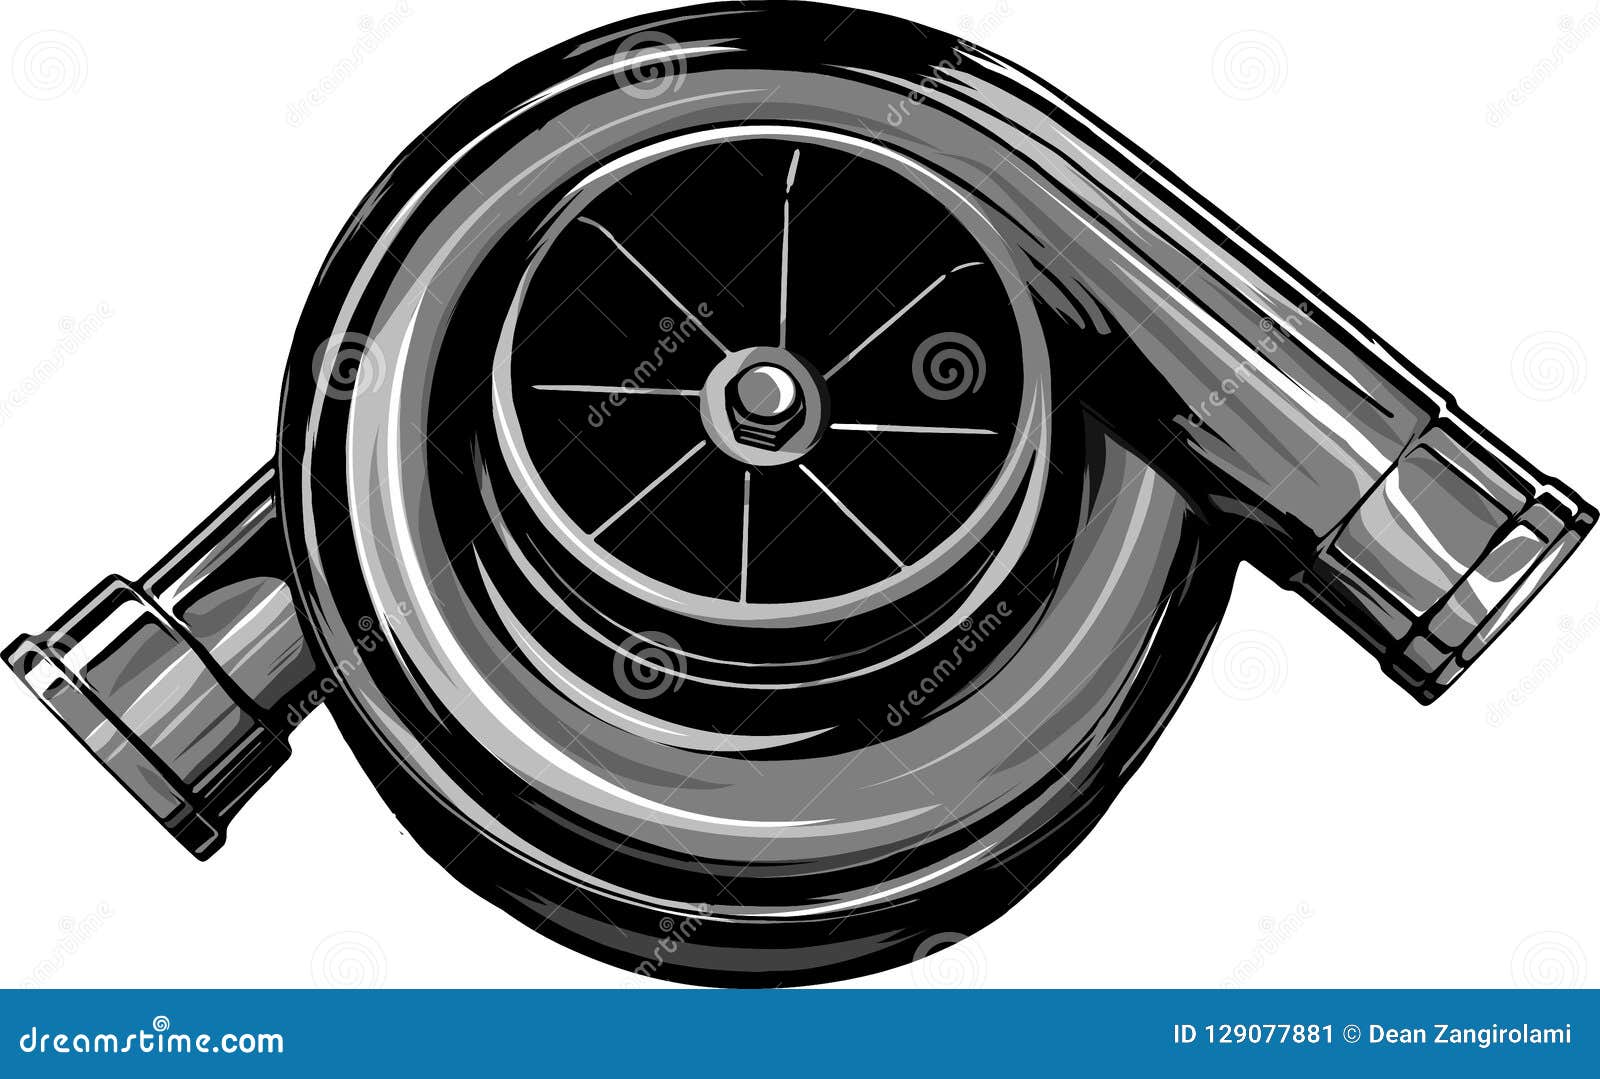 Turbo Symbol Stock Illustrations – 7,530 Turbo Symbol Stock Illustrations,  Vectors & Clipart - Dreamstime